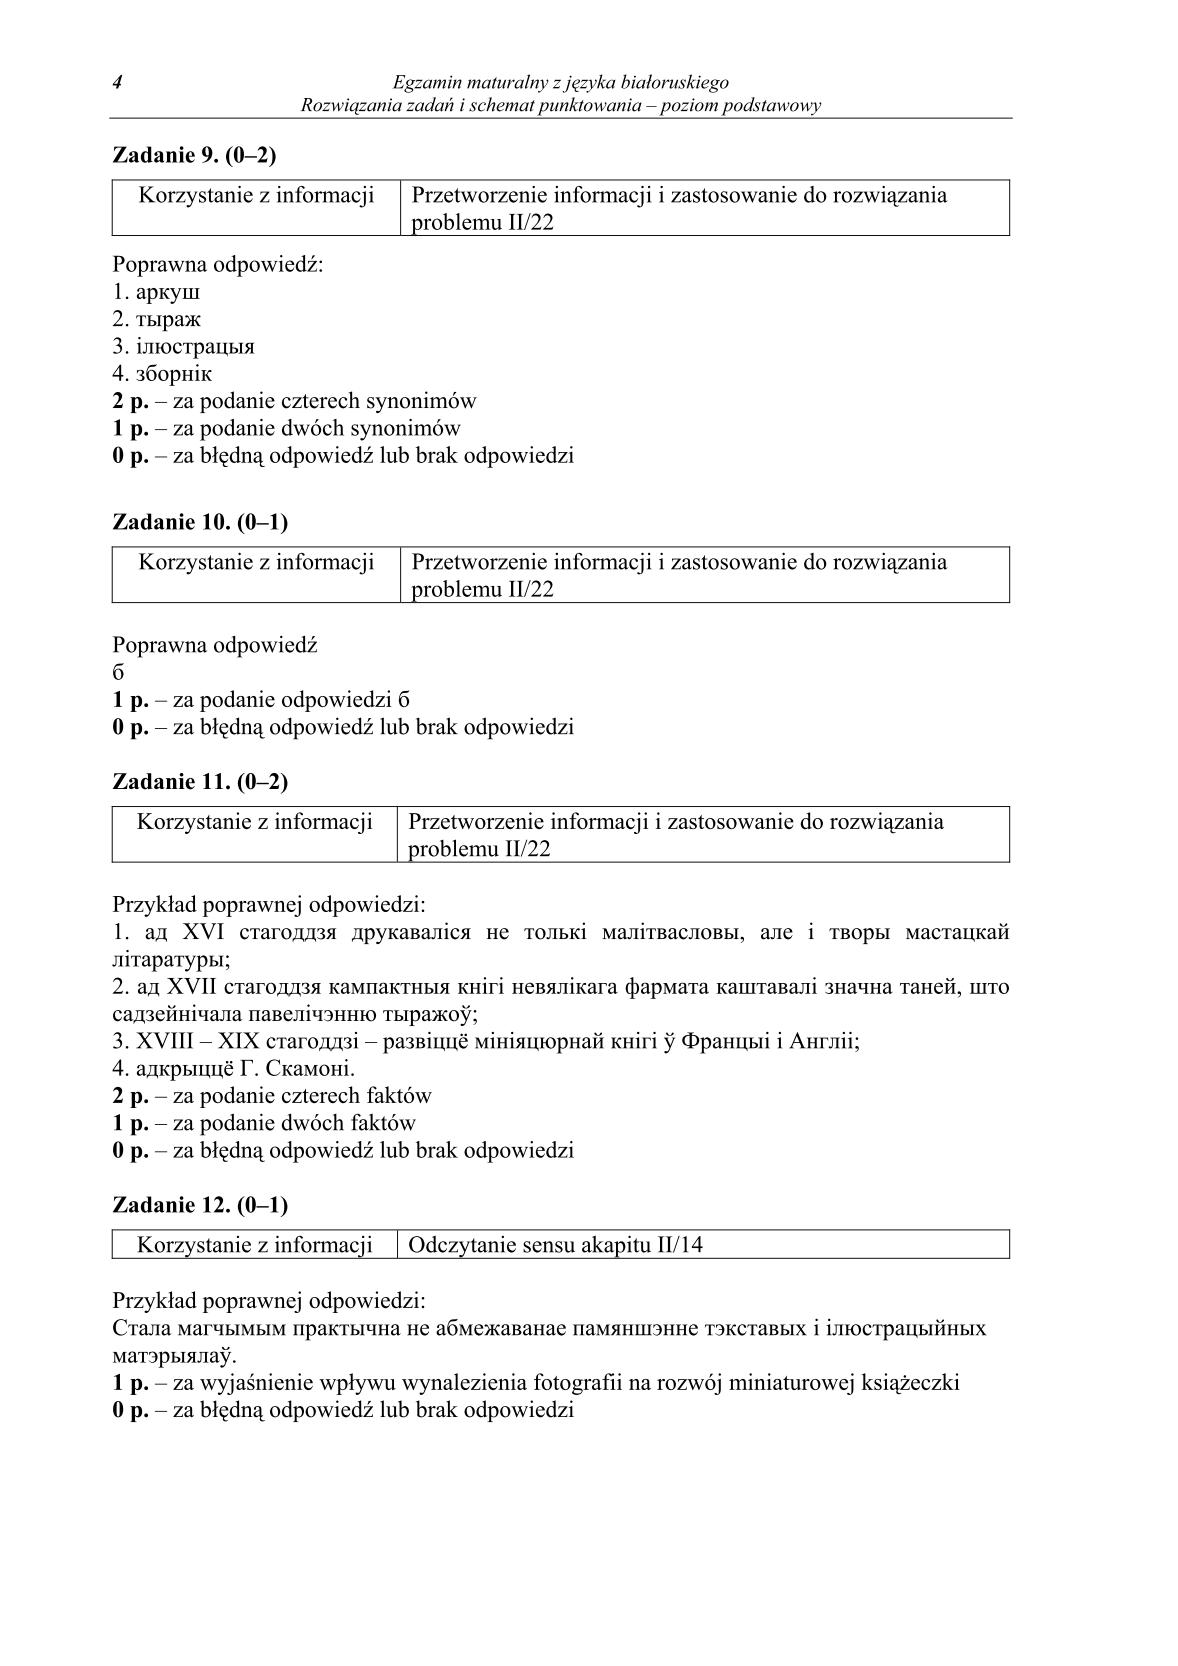 odpowiedzi-jezyk-bialoruski-poziom-podstawowy-matura-2014-str.4